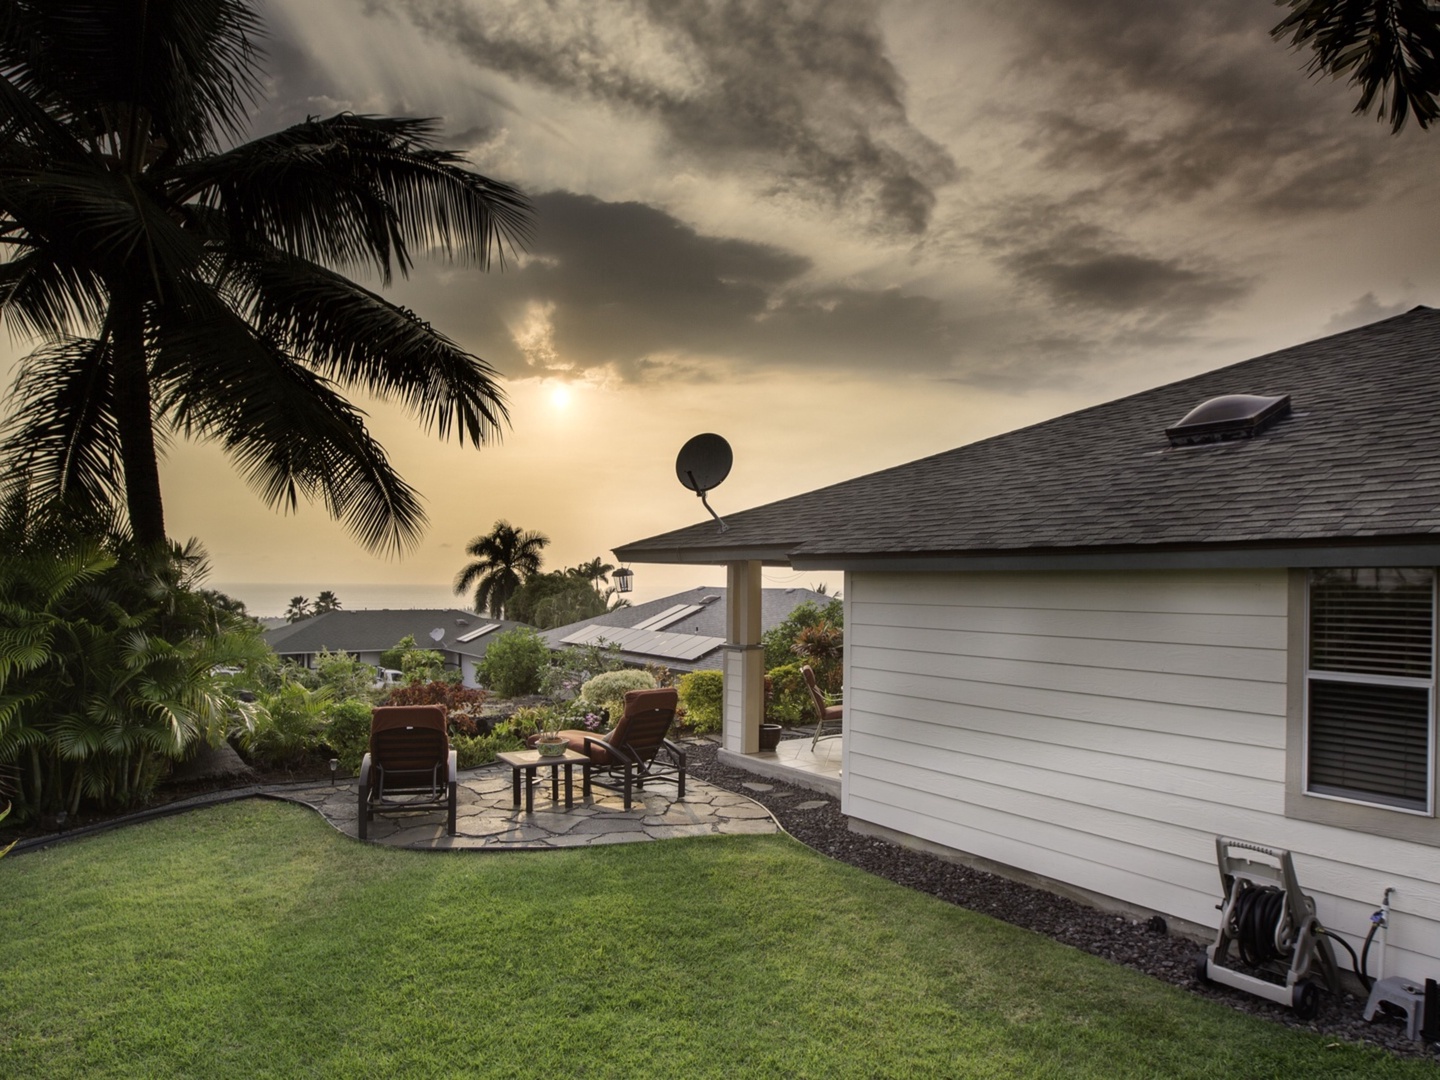 Kailua Kona Vacation Rentals, Hale Alaula - Ocean View - Behold Hale Alaula, House of Sunset Glow